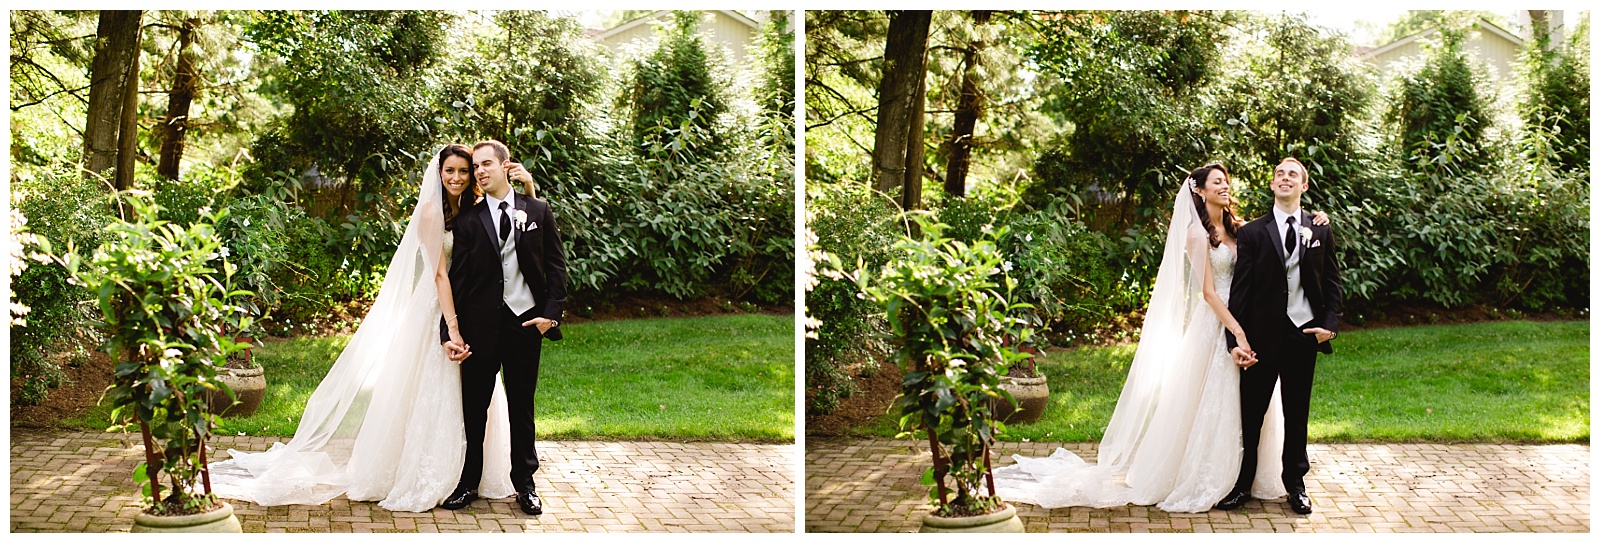 the estate at florentine gardens wedding photos wedding photo estate at florentine gardens wedding pic estate at florentine garden wedding photography